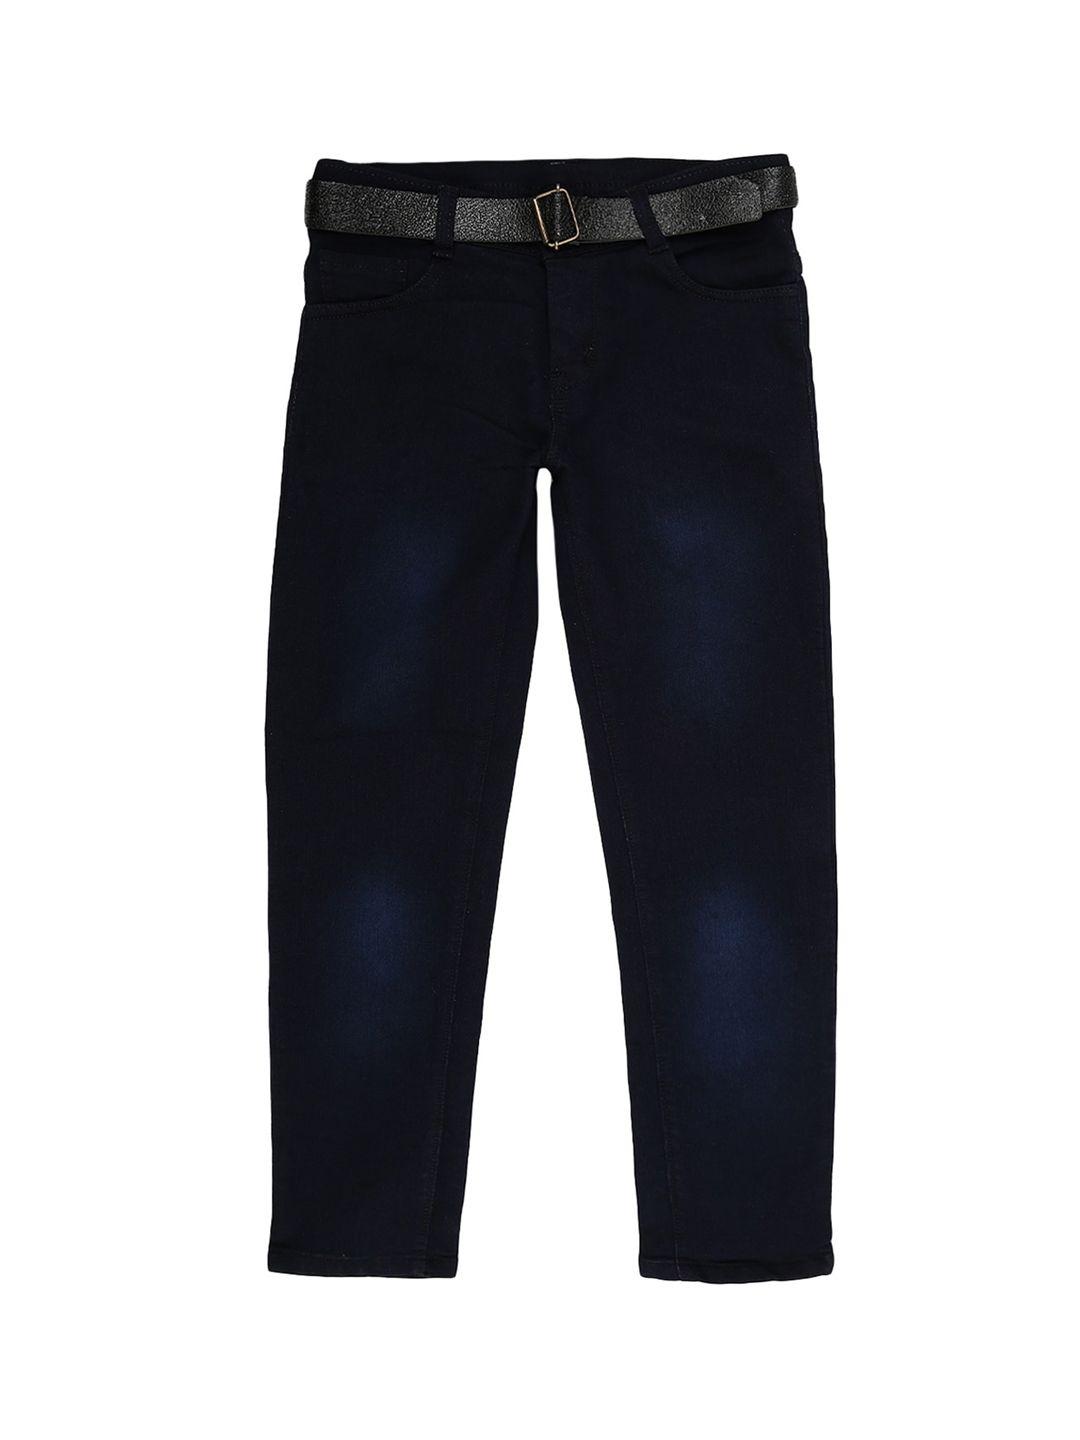 v-mart boys navy blue light fade mid rise jeans